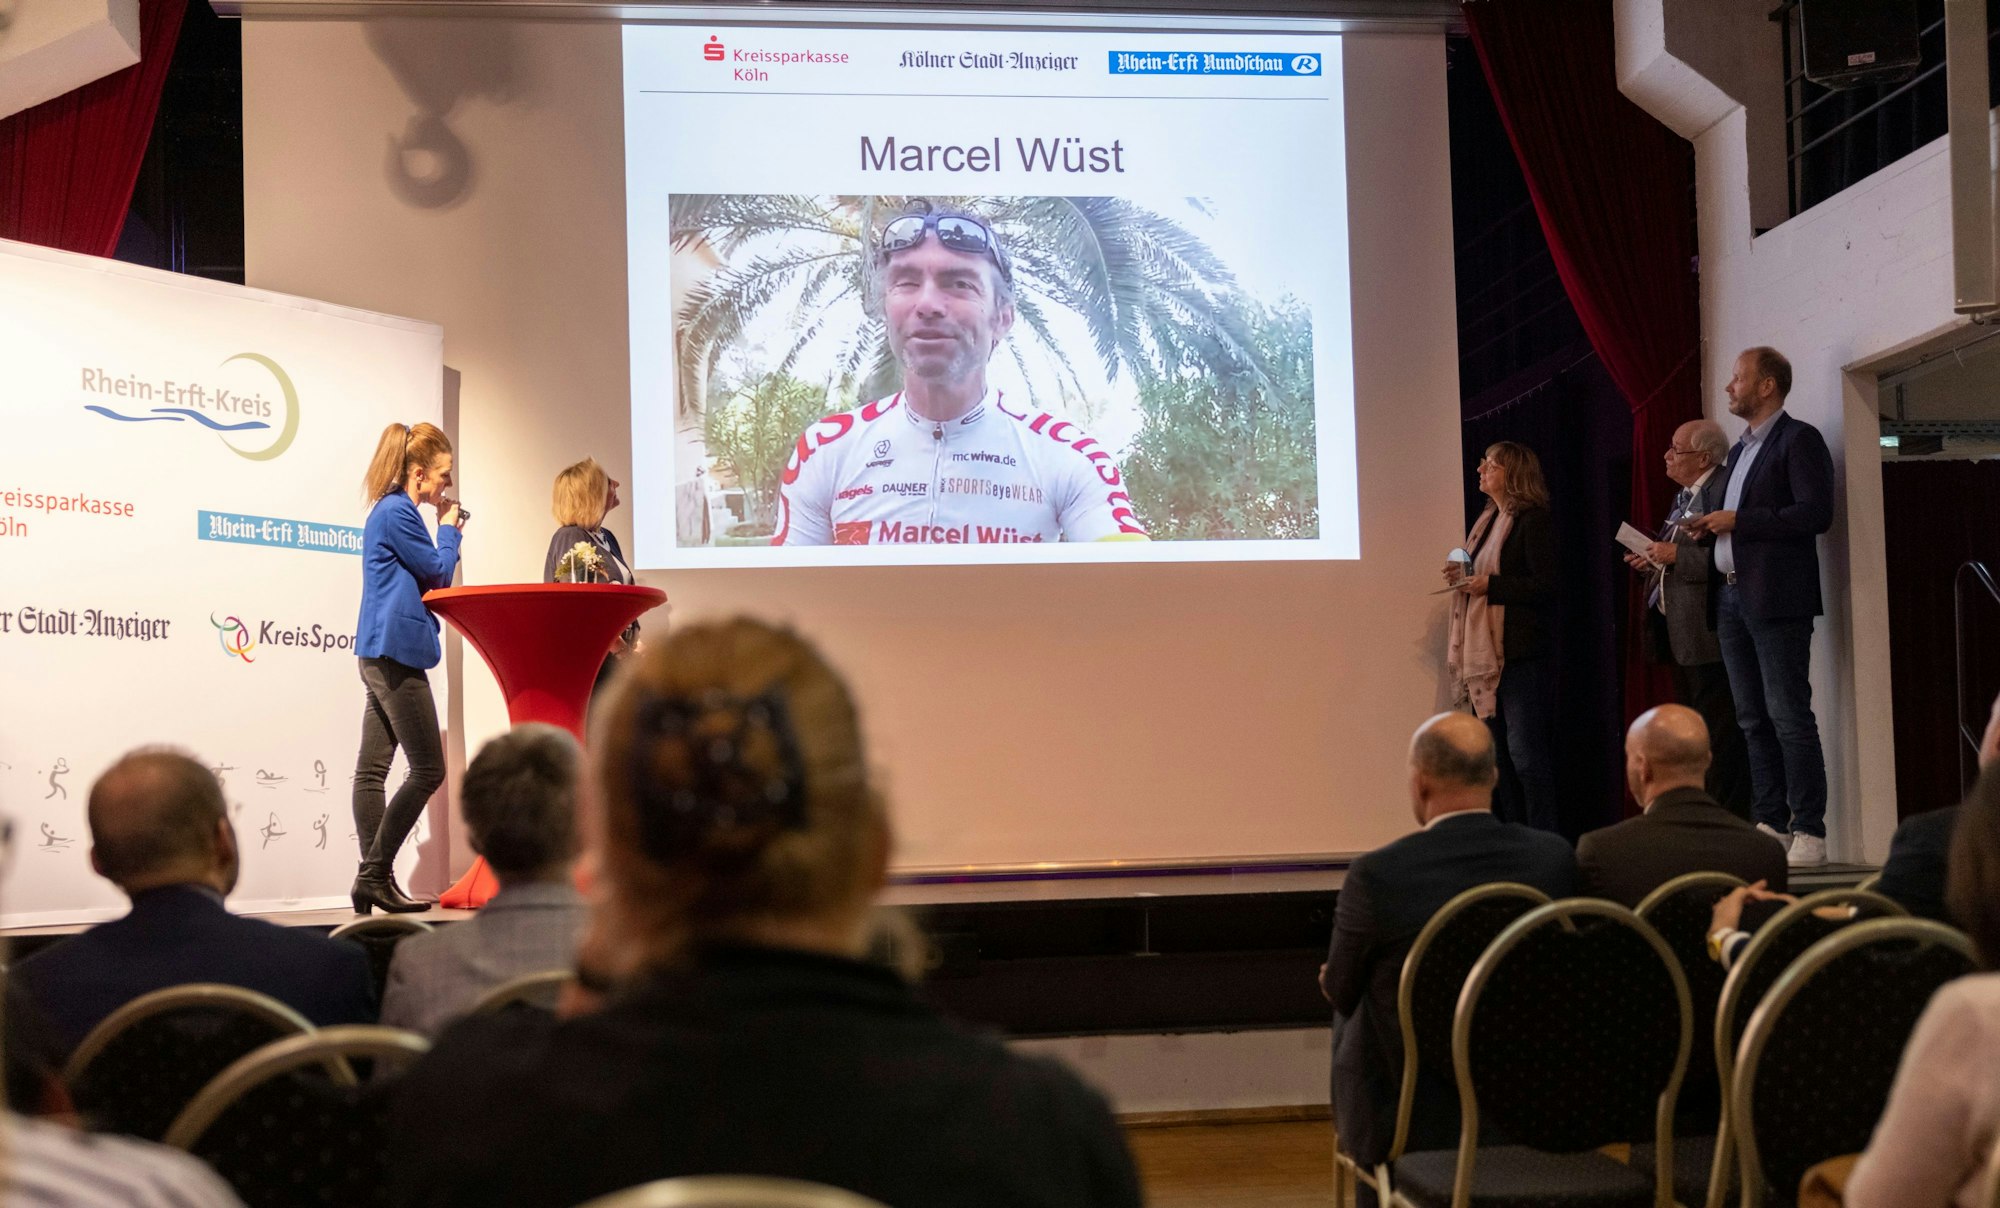 Der ehemalige Radprofi Marcel Wüst, der Sportpate für die Kategorie Mannschaften war, konnte am Abend nicht persönlich anwesend sein, schickte aber eine Videobotschaft an die Gewinner.